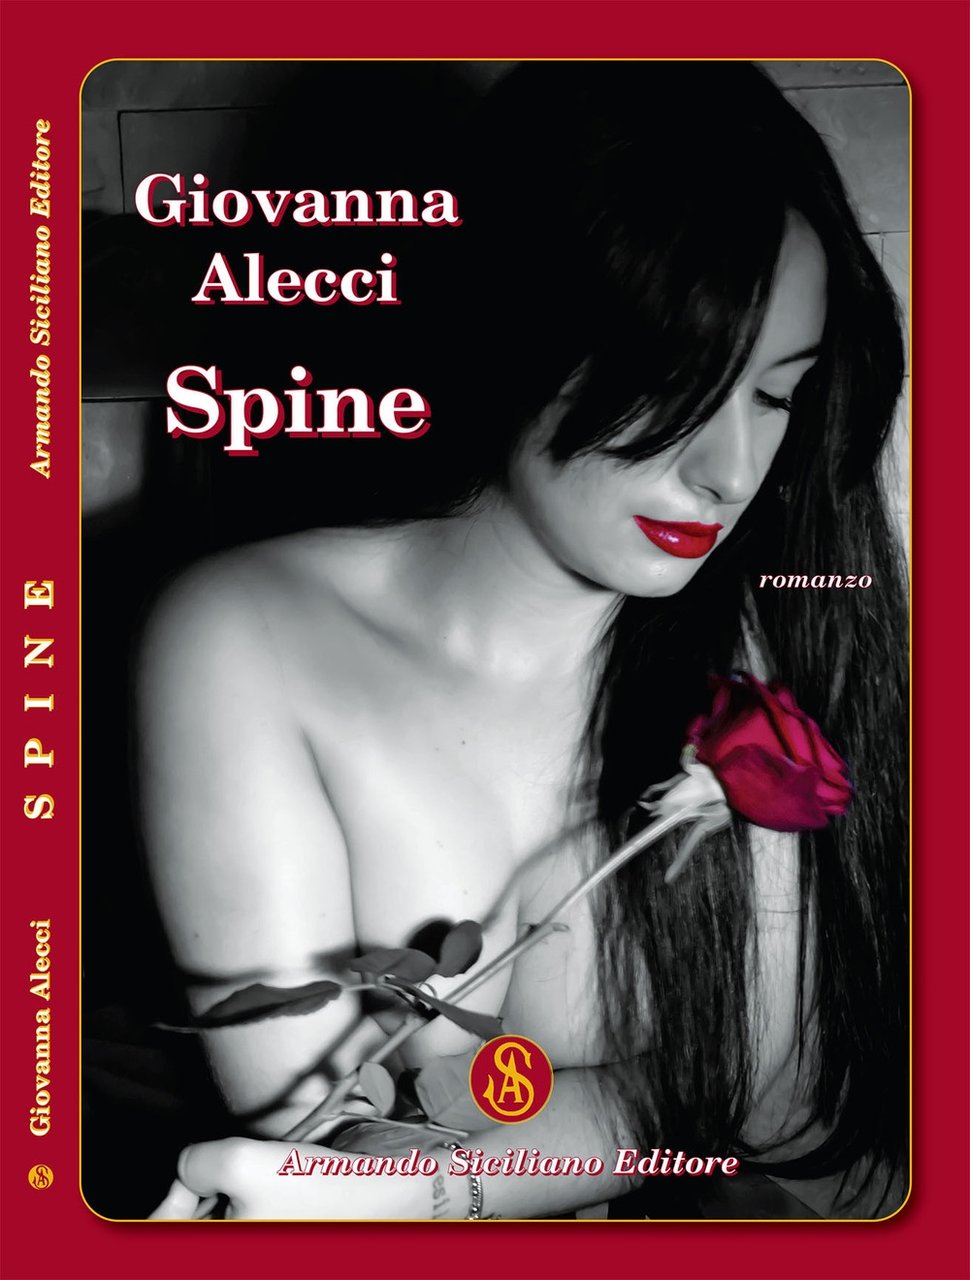 Spine, Messina, Armando Siciliano Editore, 2021